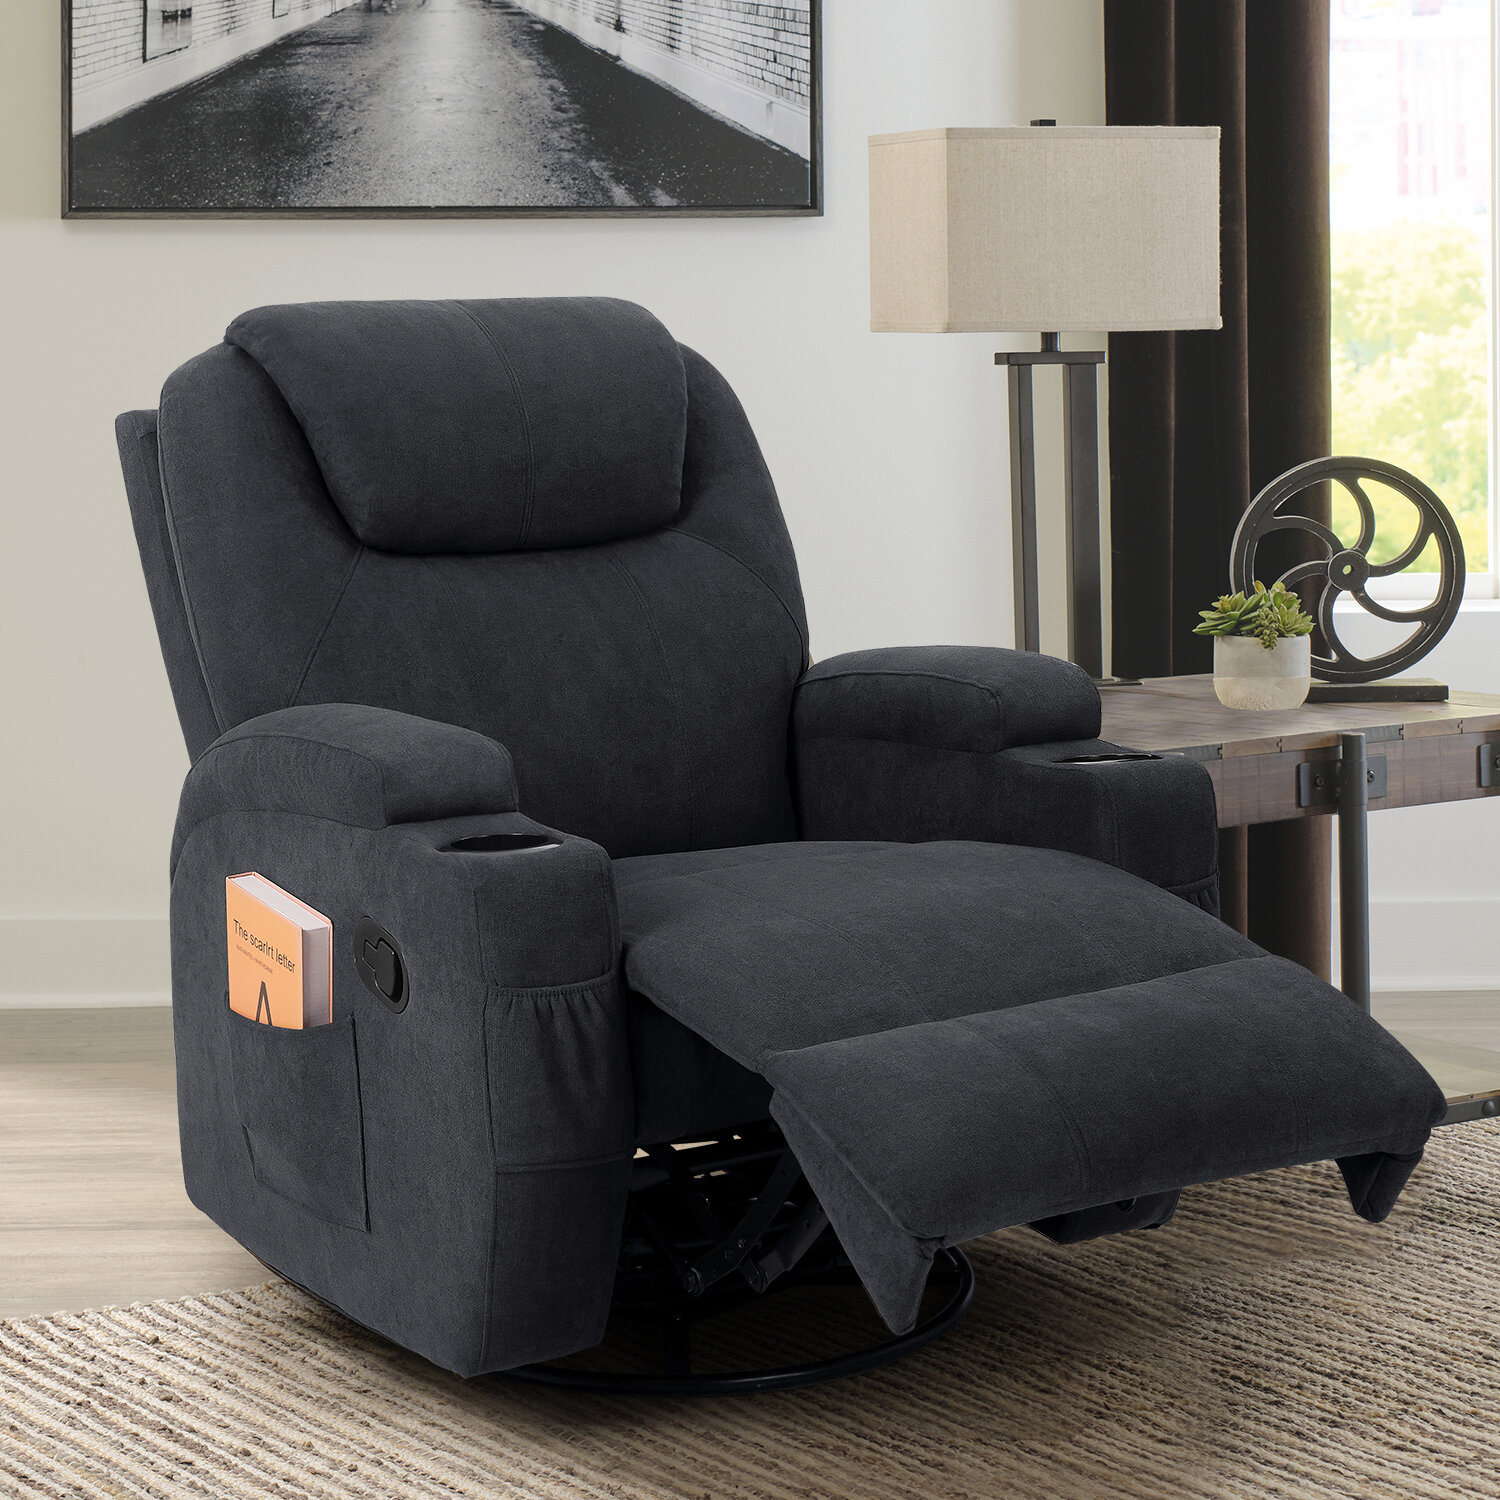 https://assets.wfcdn.com/im/77659124/compr-r85/1731/173128347/upholstered-heated-massage-chair.jpg